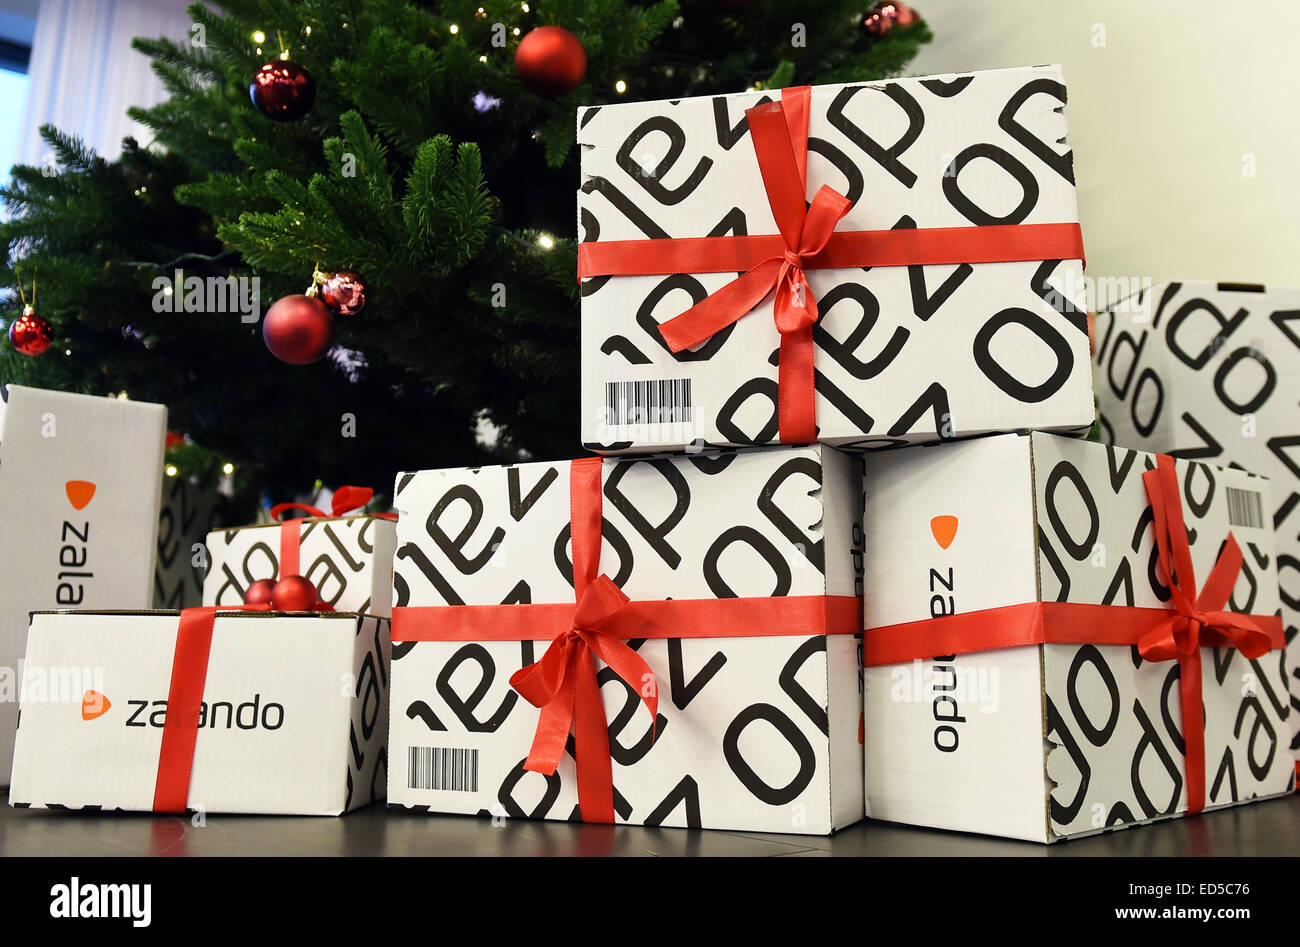 I pacchi con il logo del rivenditore online Zalando e nastri rossi si  trovano sotto un albero di Natale in tecnologia Zalando ufficio a Berlino,  Germania, 18 dicembre 2014. Foto: Jens Kalaene/dpa